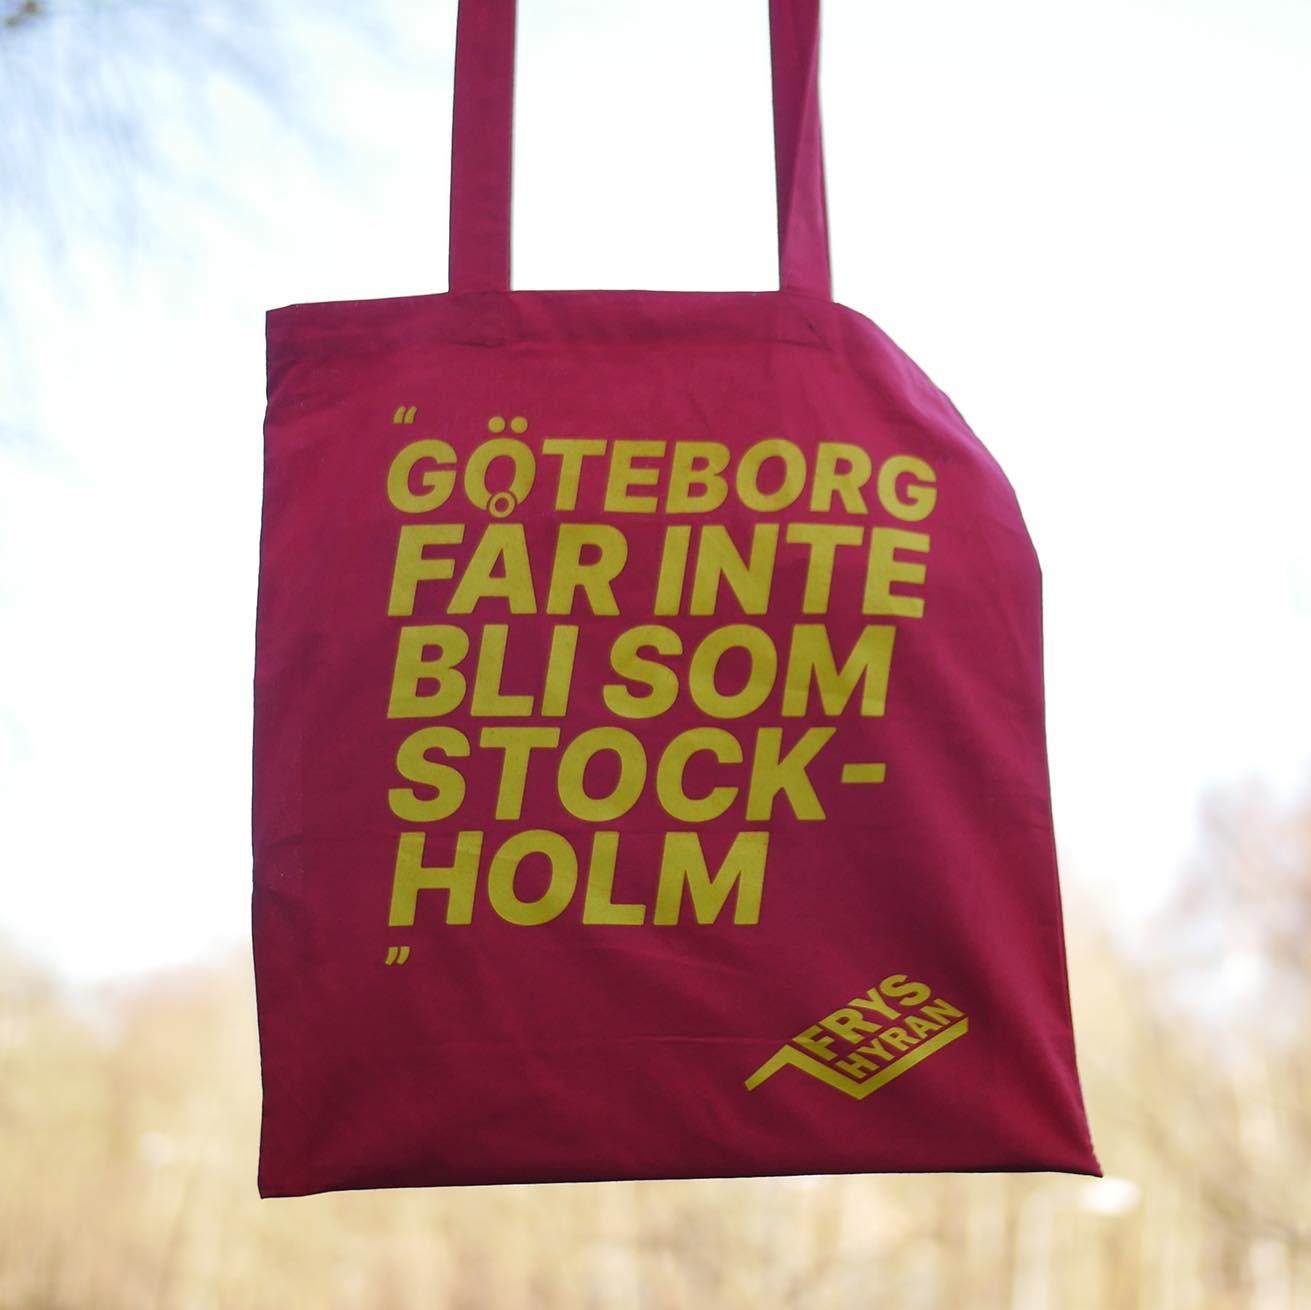 Tygkasse: Göteborg får inte bli som Stockholm